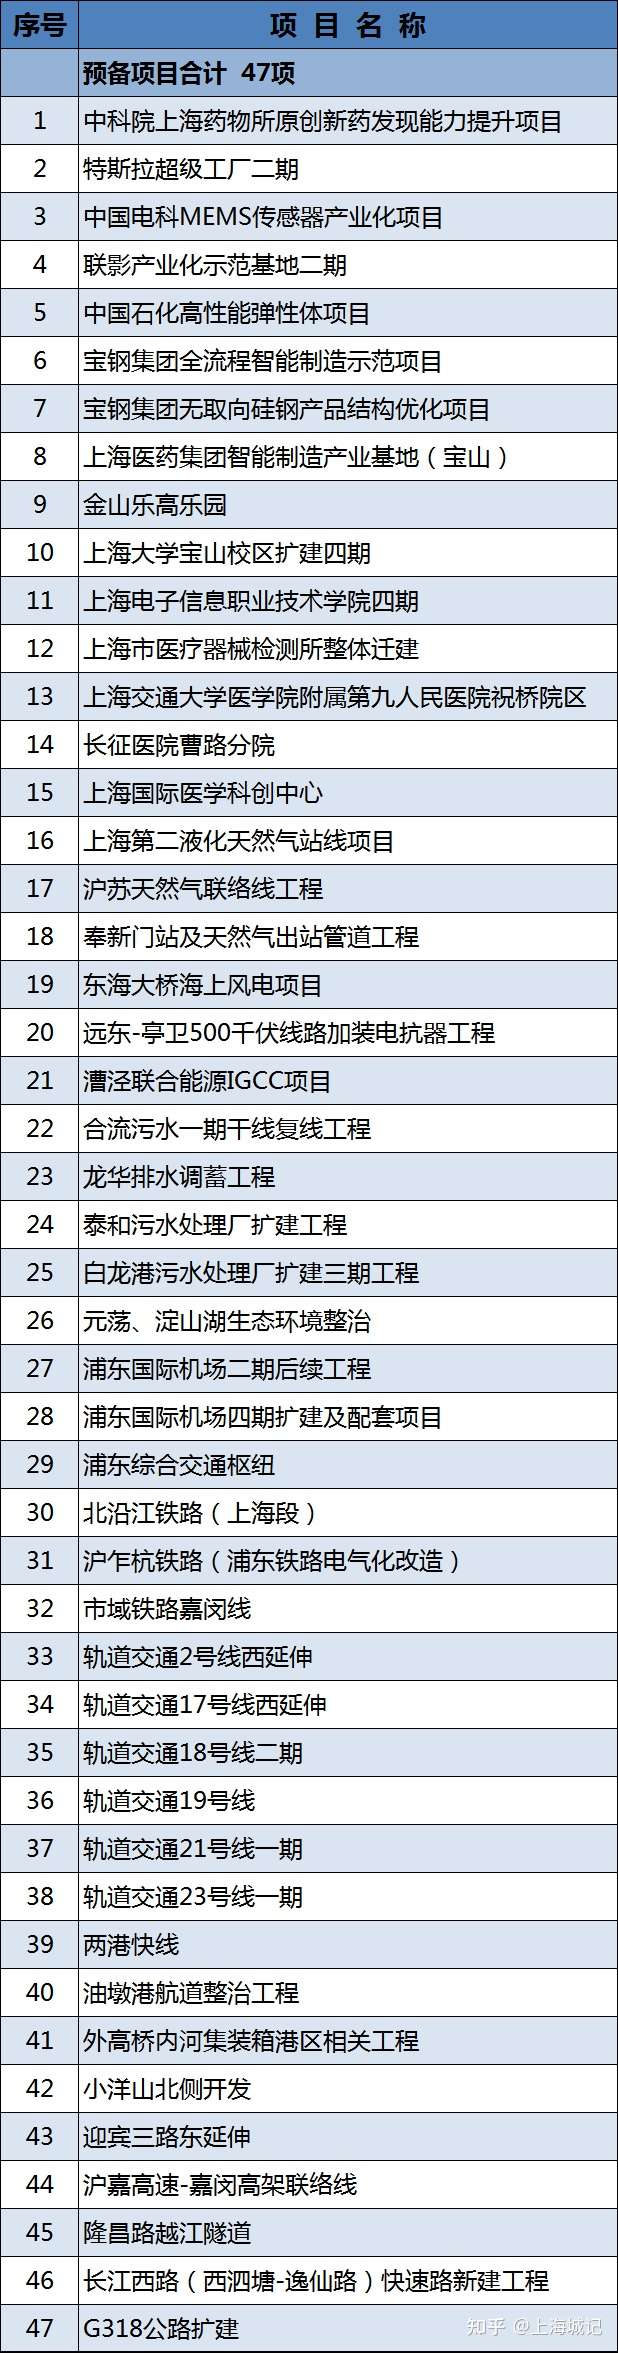 2021年上海重大建設項目清單公布(圖6)